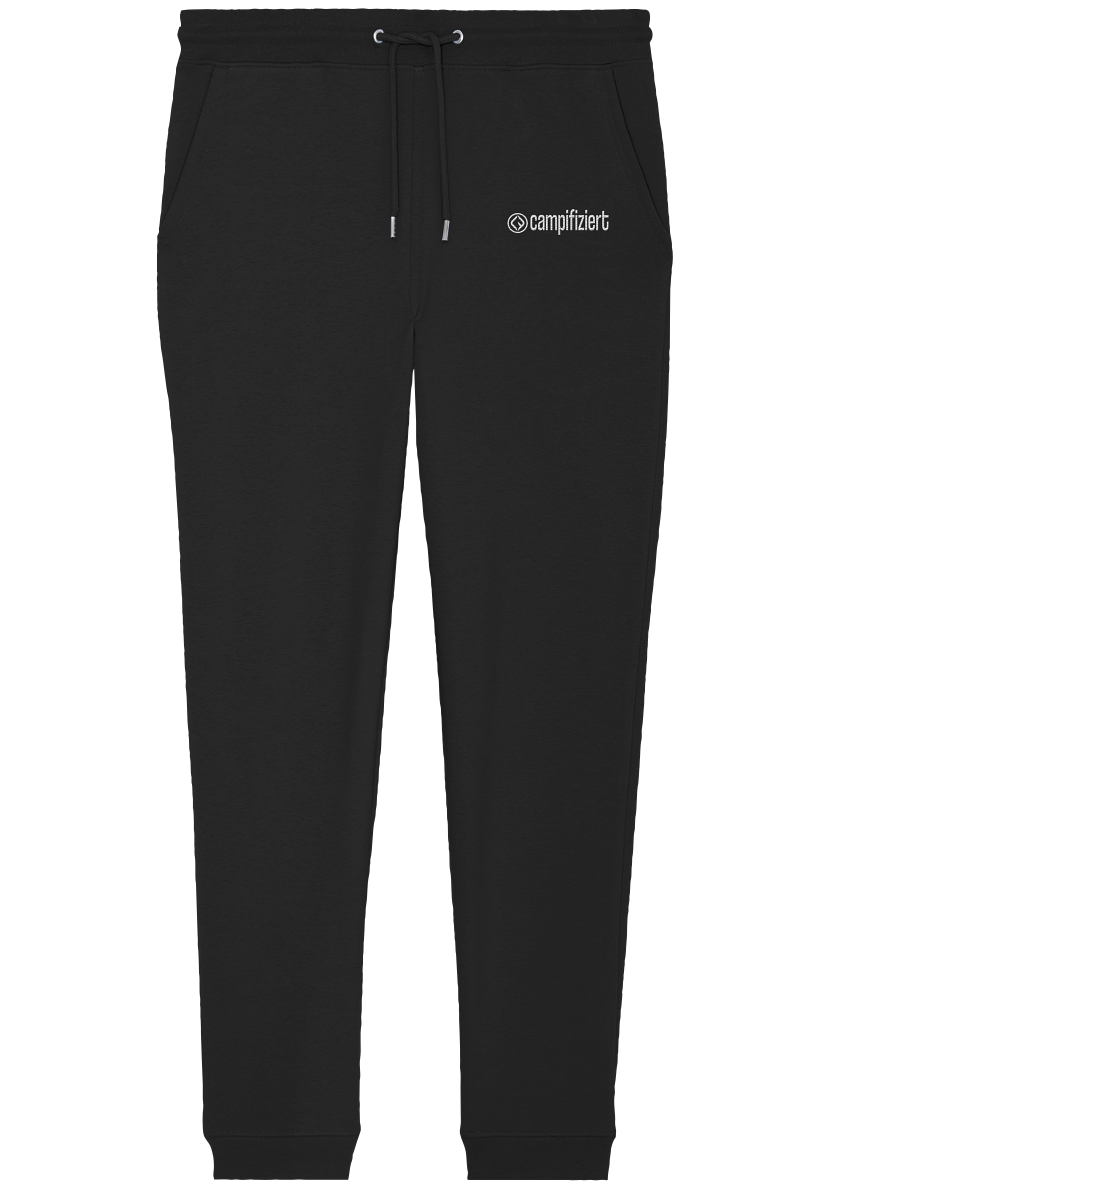 campifiziert® Logo gestickt - Organic Jogger Pants (Stick)